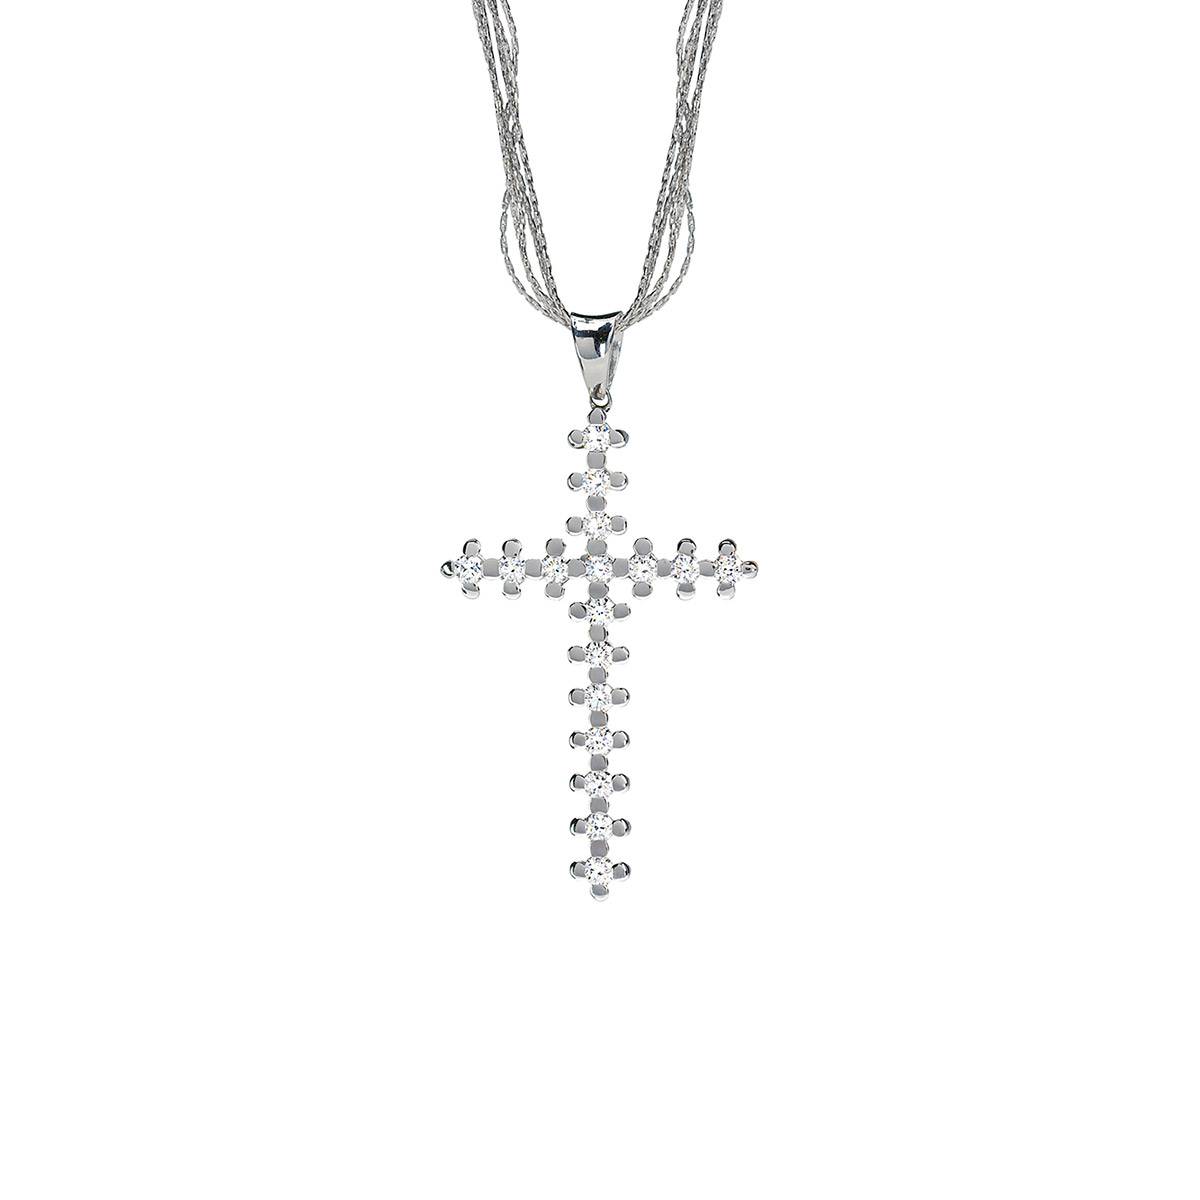 βαπτισικος σταυρος γυναικειος με διαμαντια